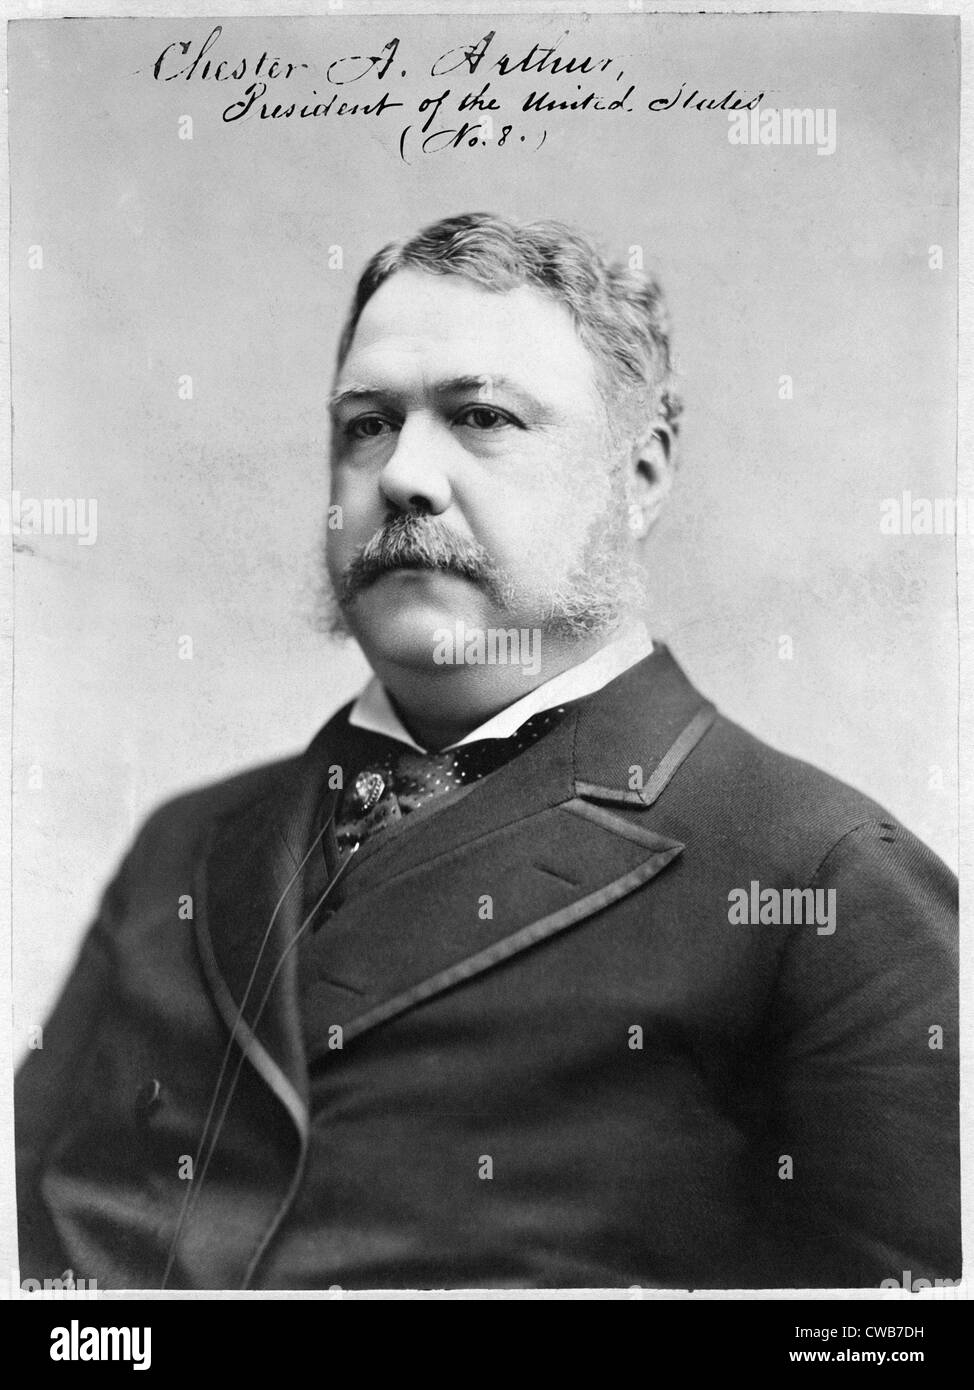 Chester A. Arthur, président des États-Unis. Photographie, 1882 Banque D'Images